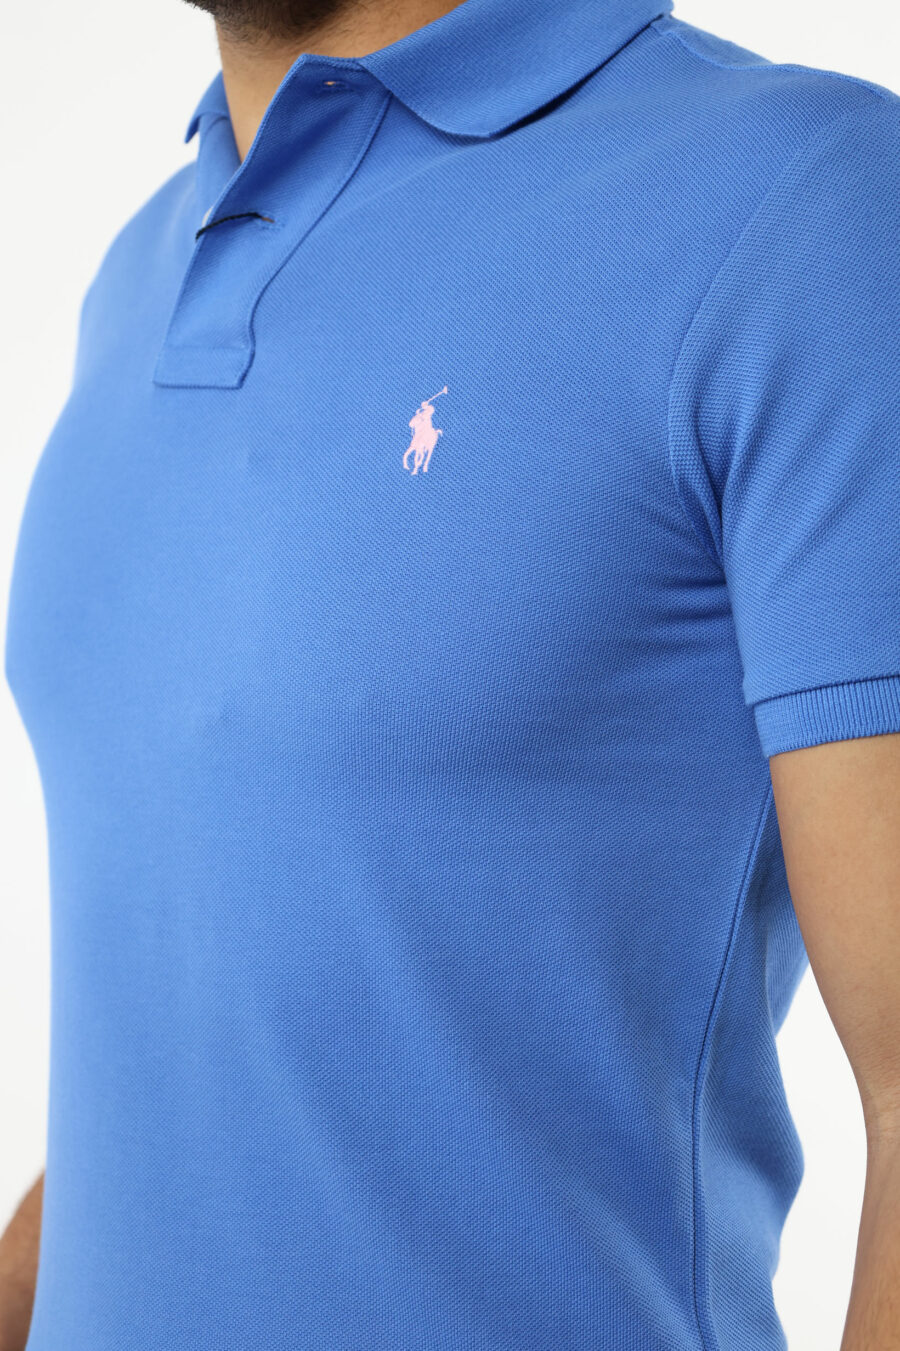 Camiseta azul y rosa con minilogo "polo" - 111231